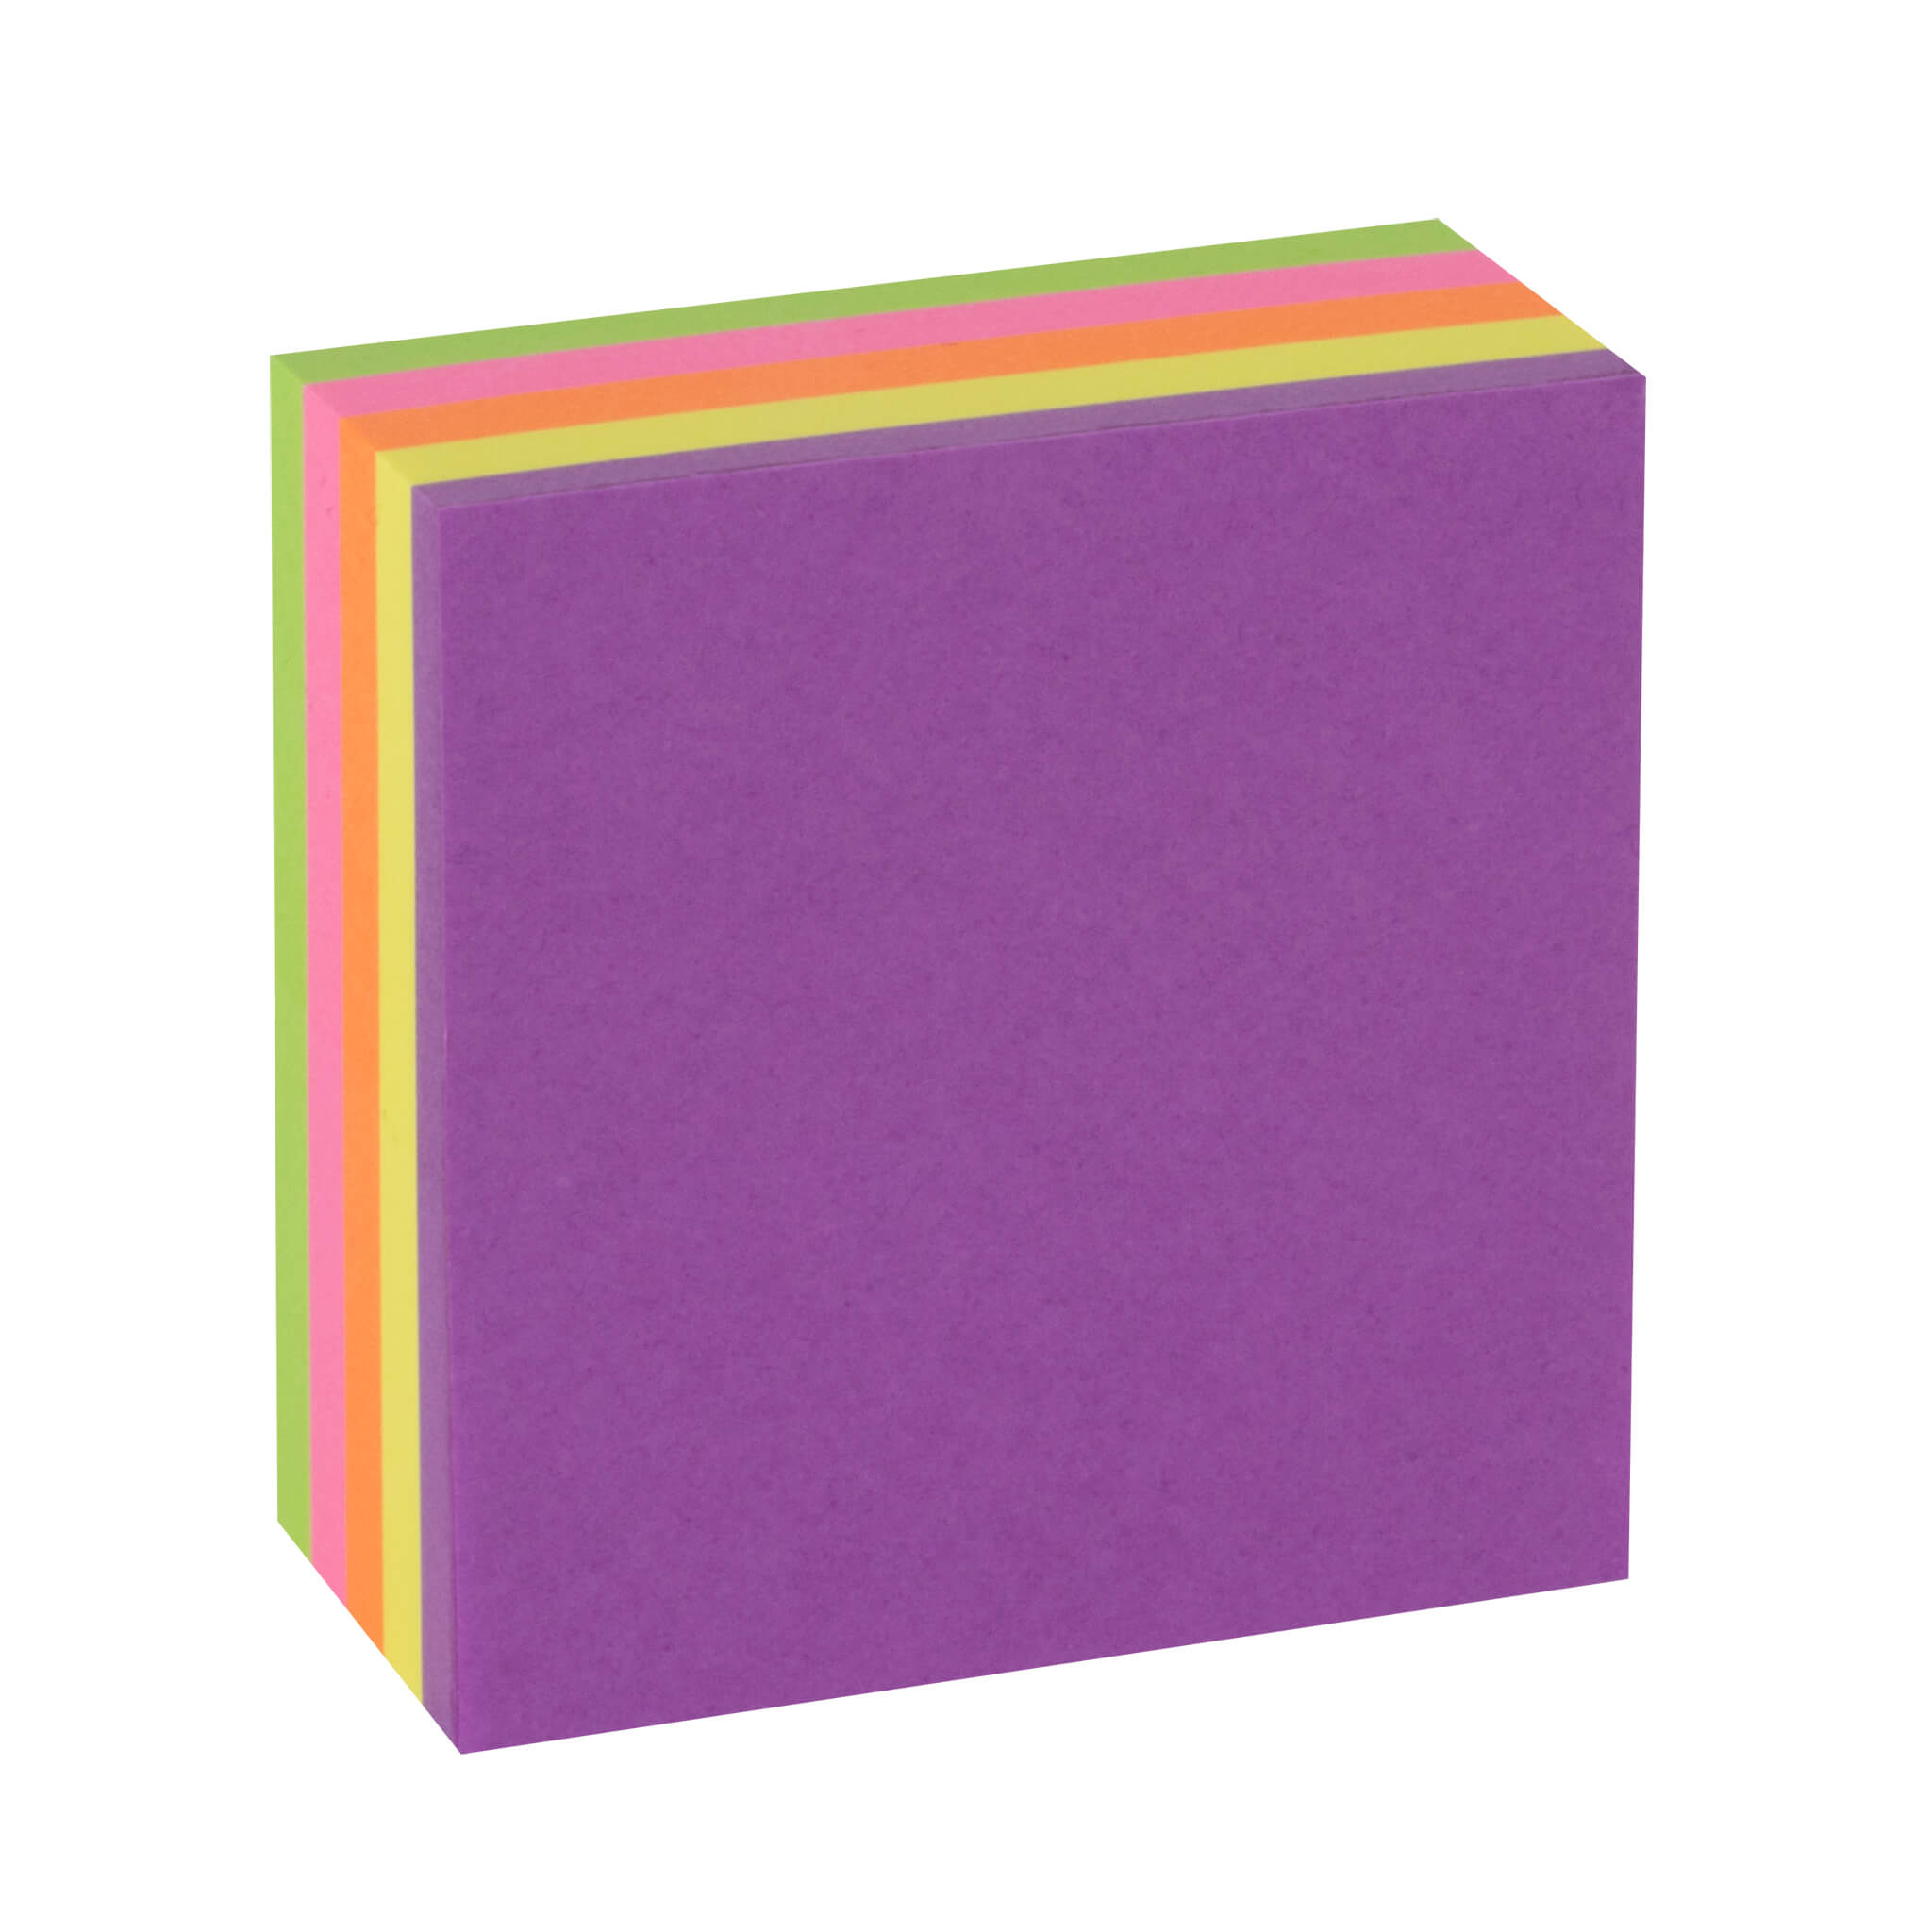 Apli Funny Sticky Notes 51x51mm Mini-Cube 250 Feuilles - 5 Couleurs Fluorescentes Assorties - Amusant et Pratique